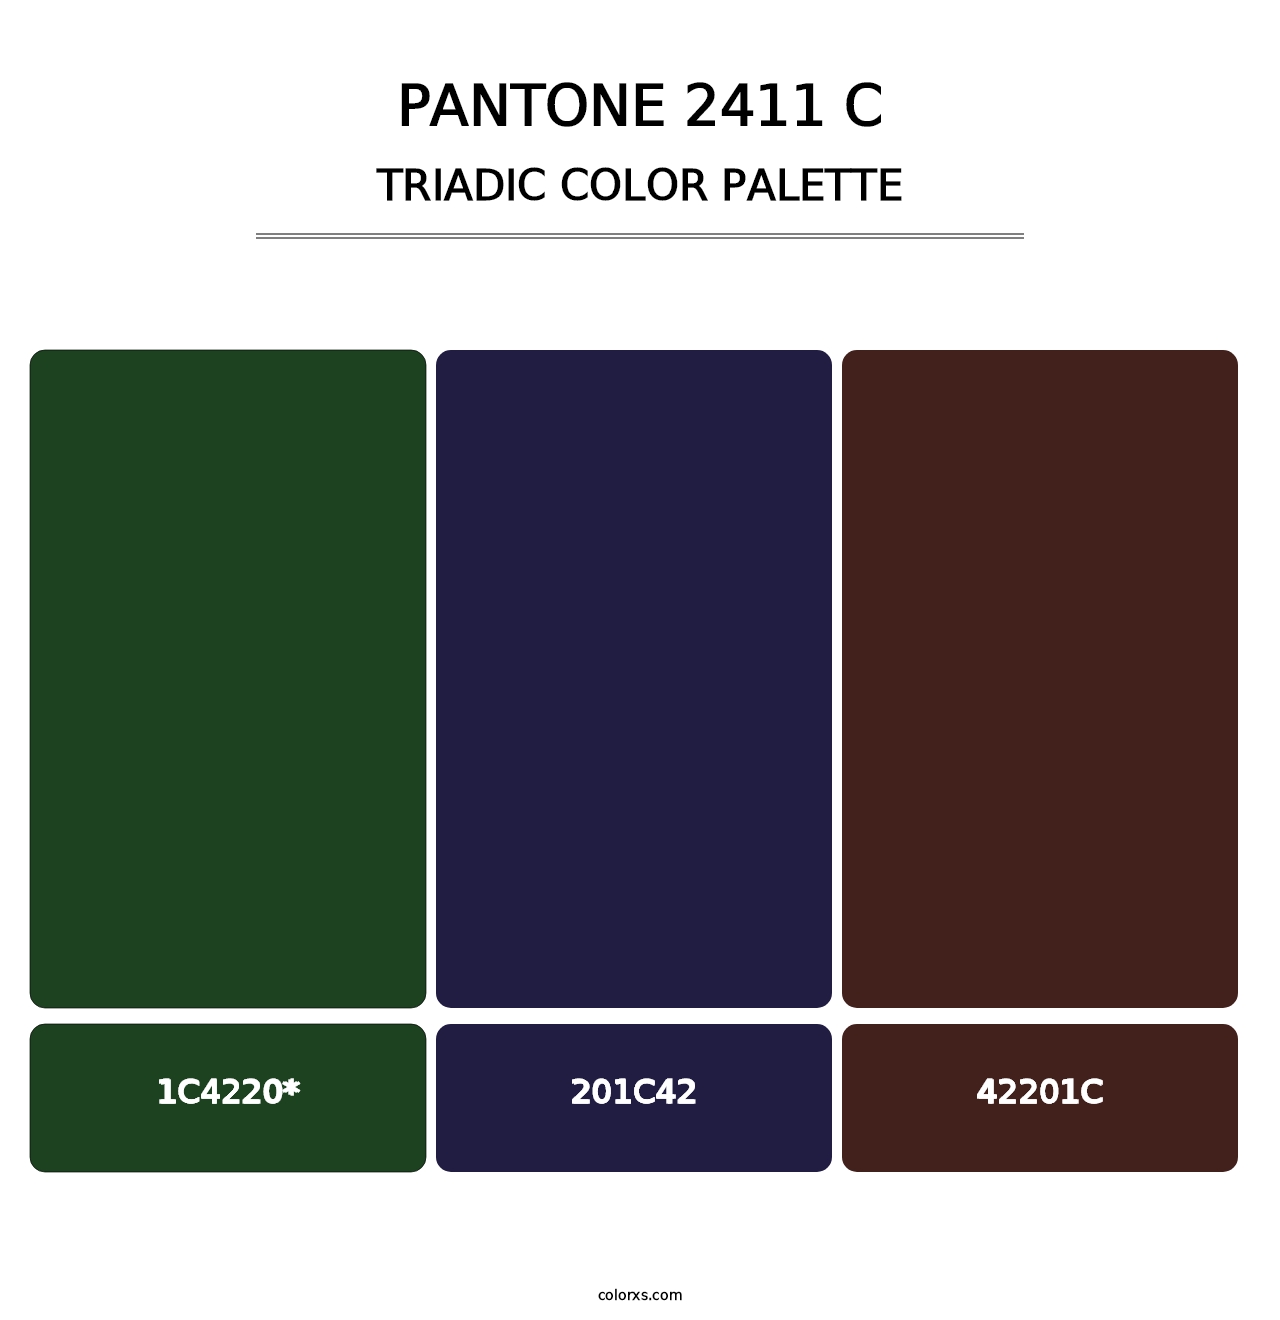 PANTONE 2411 C - Triadic Color Palette